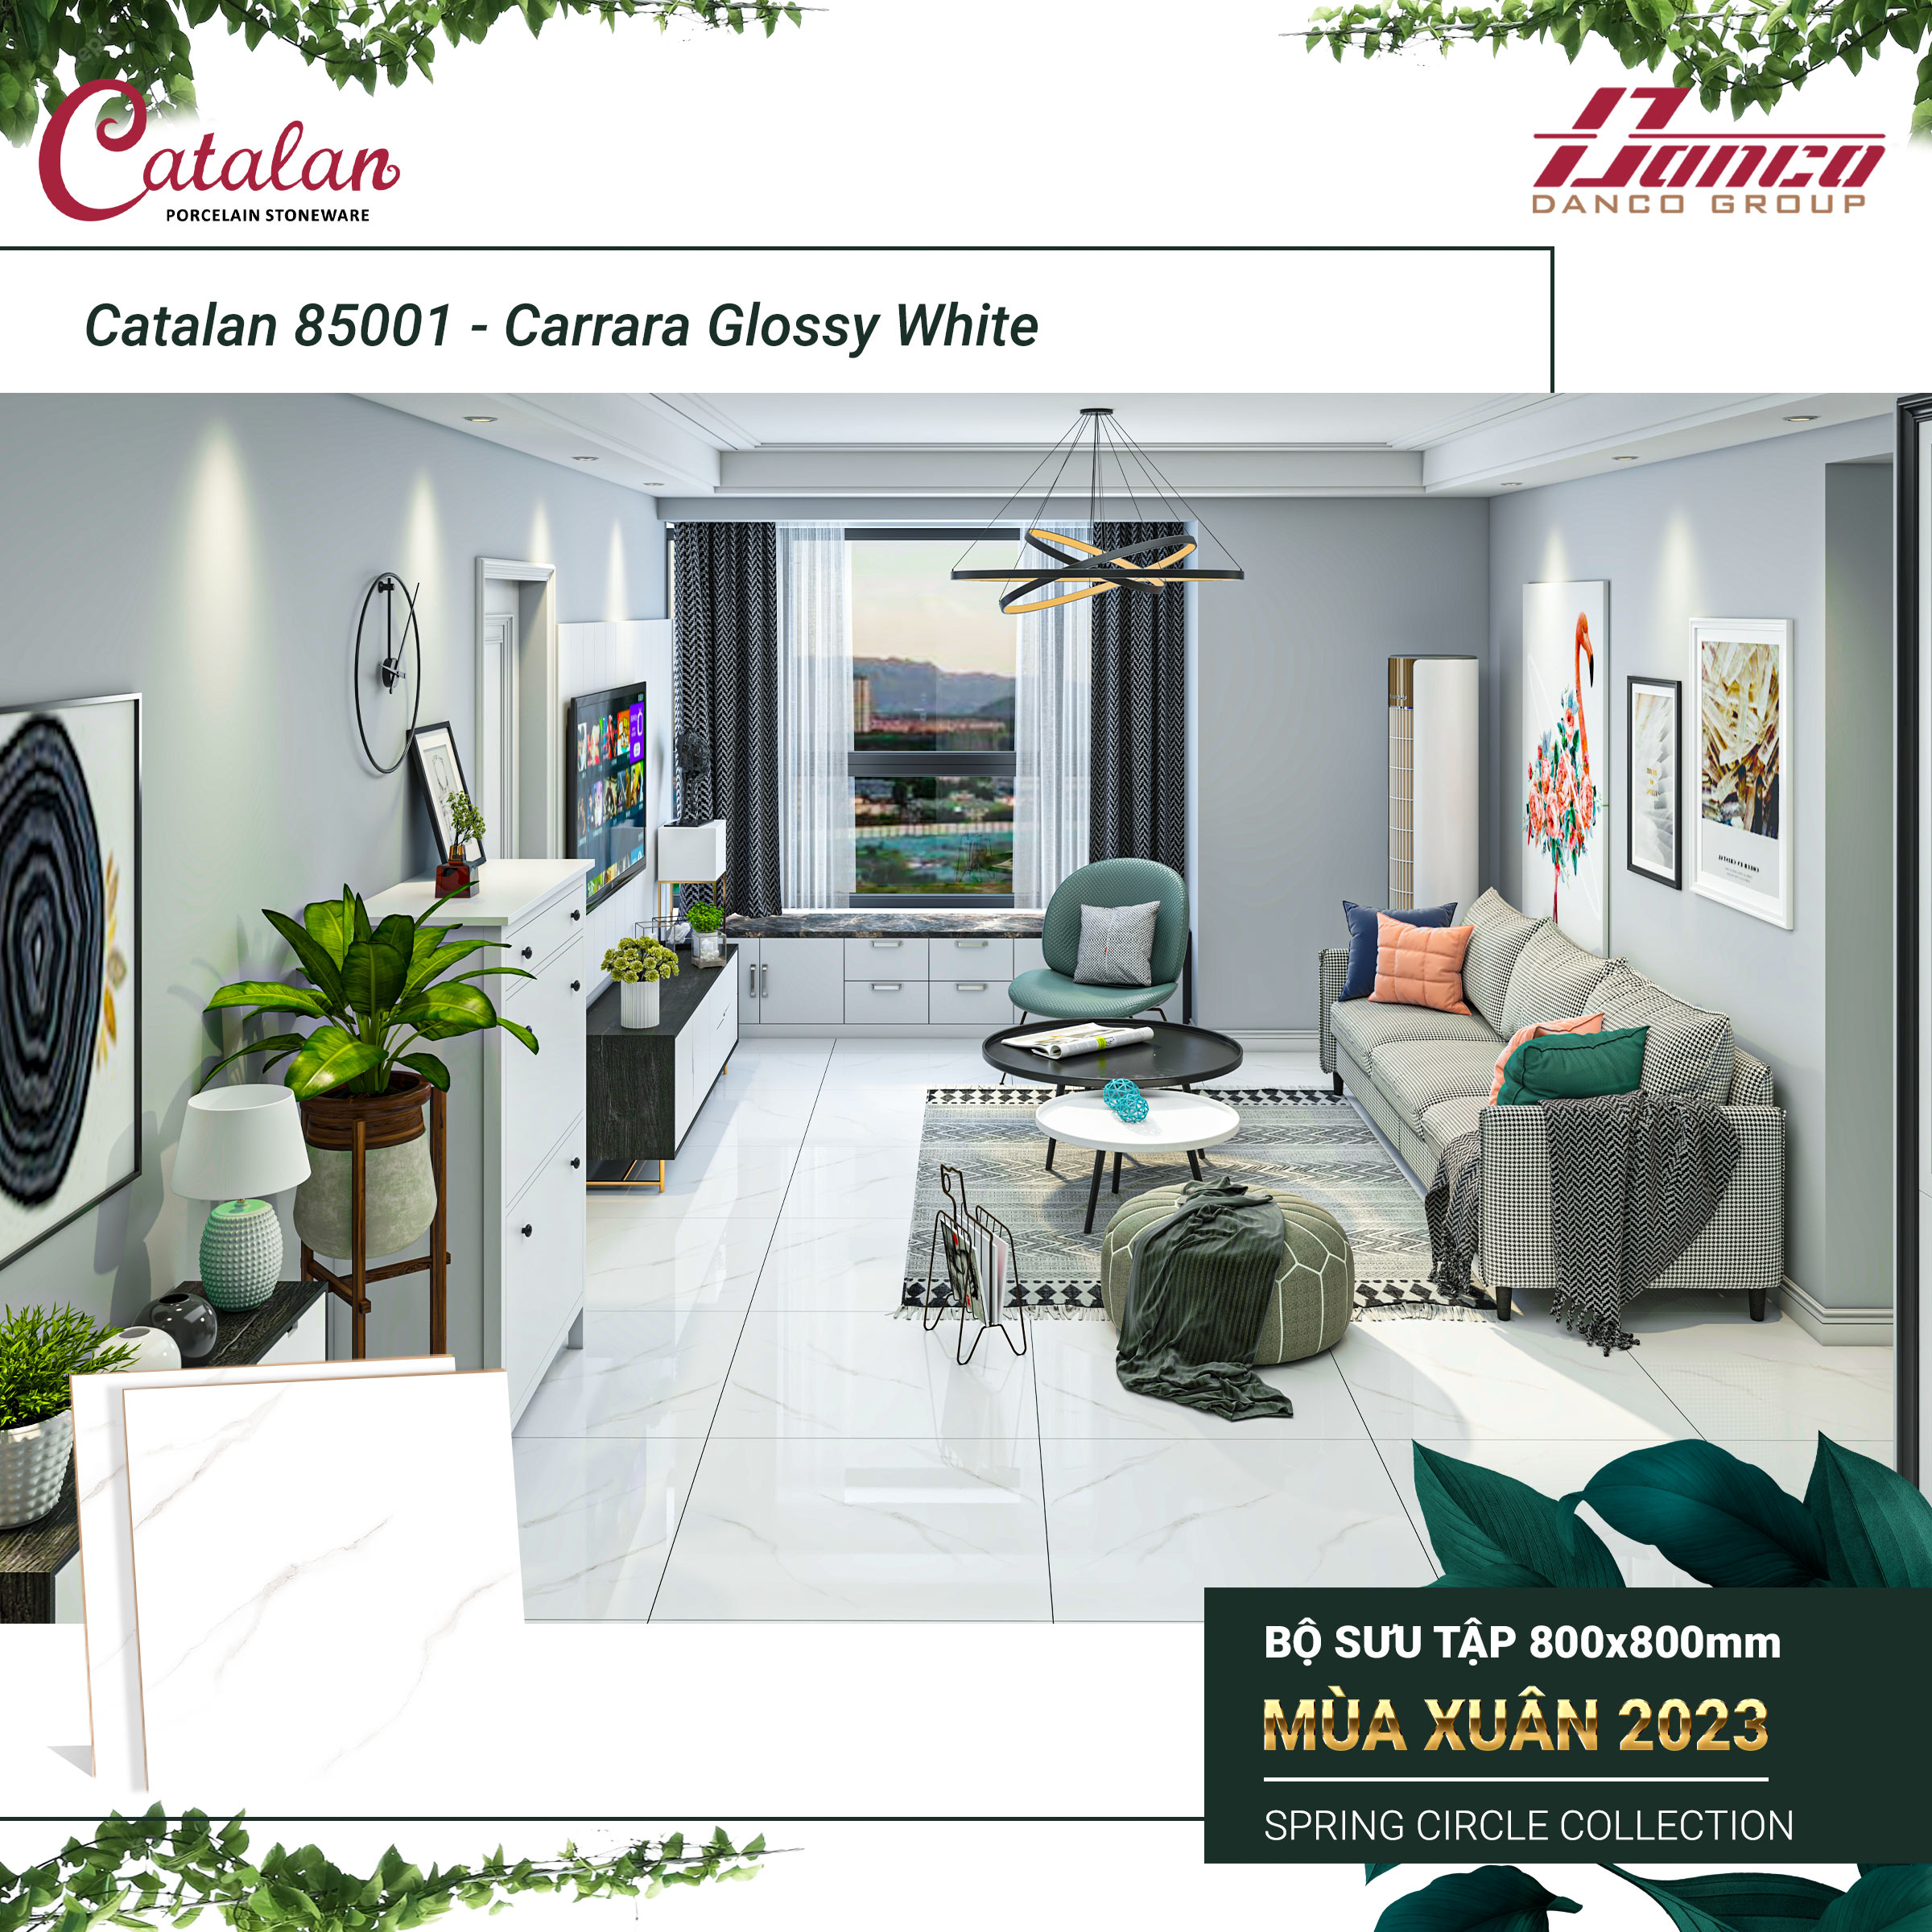 Carrara Glossy White (Catalan 85001)